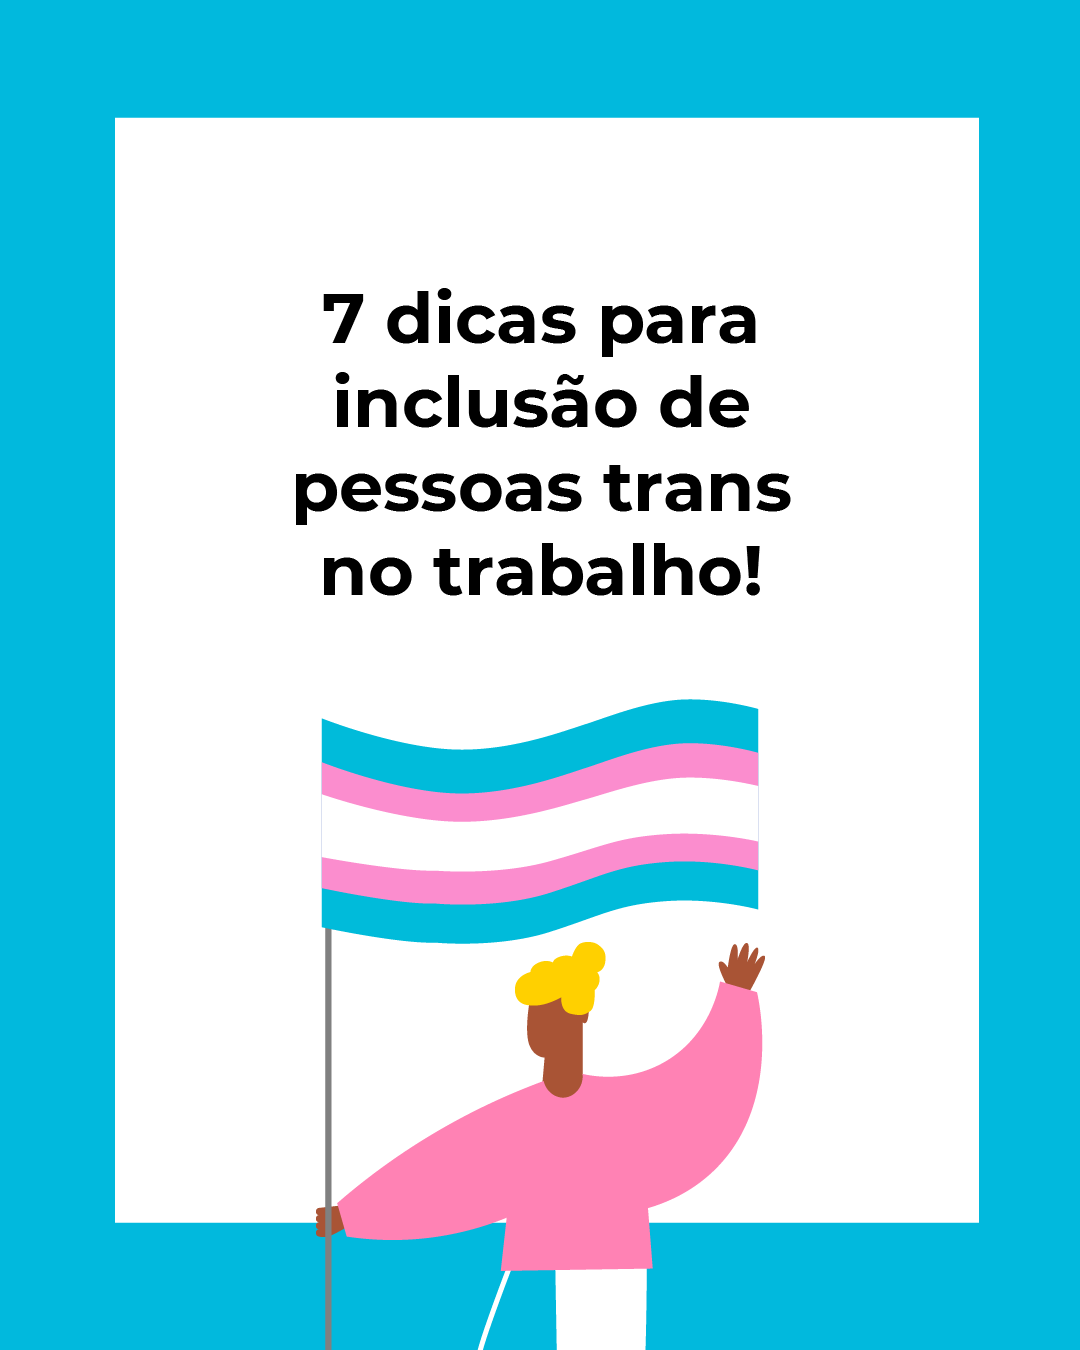 7 dias para inclusão de pessoas trans no trabalho